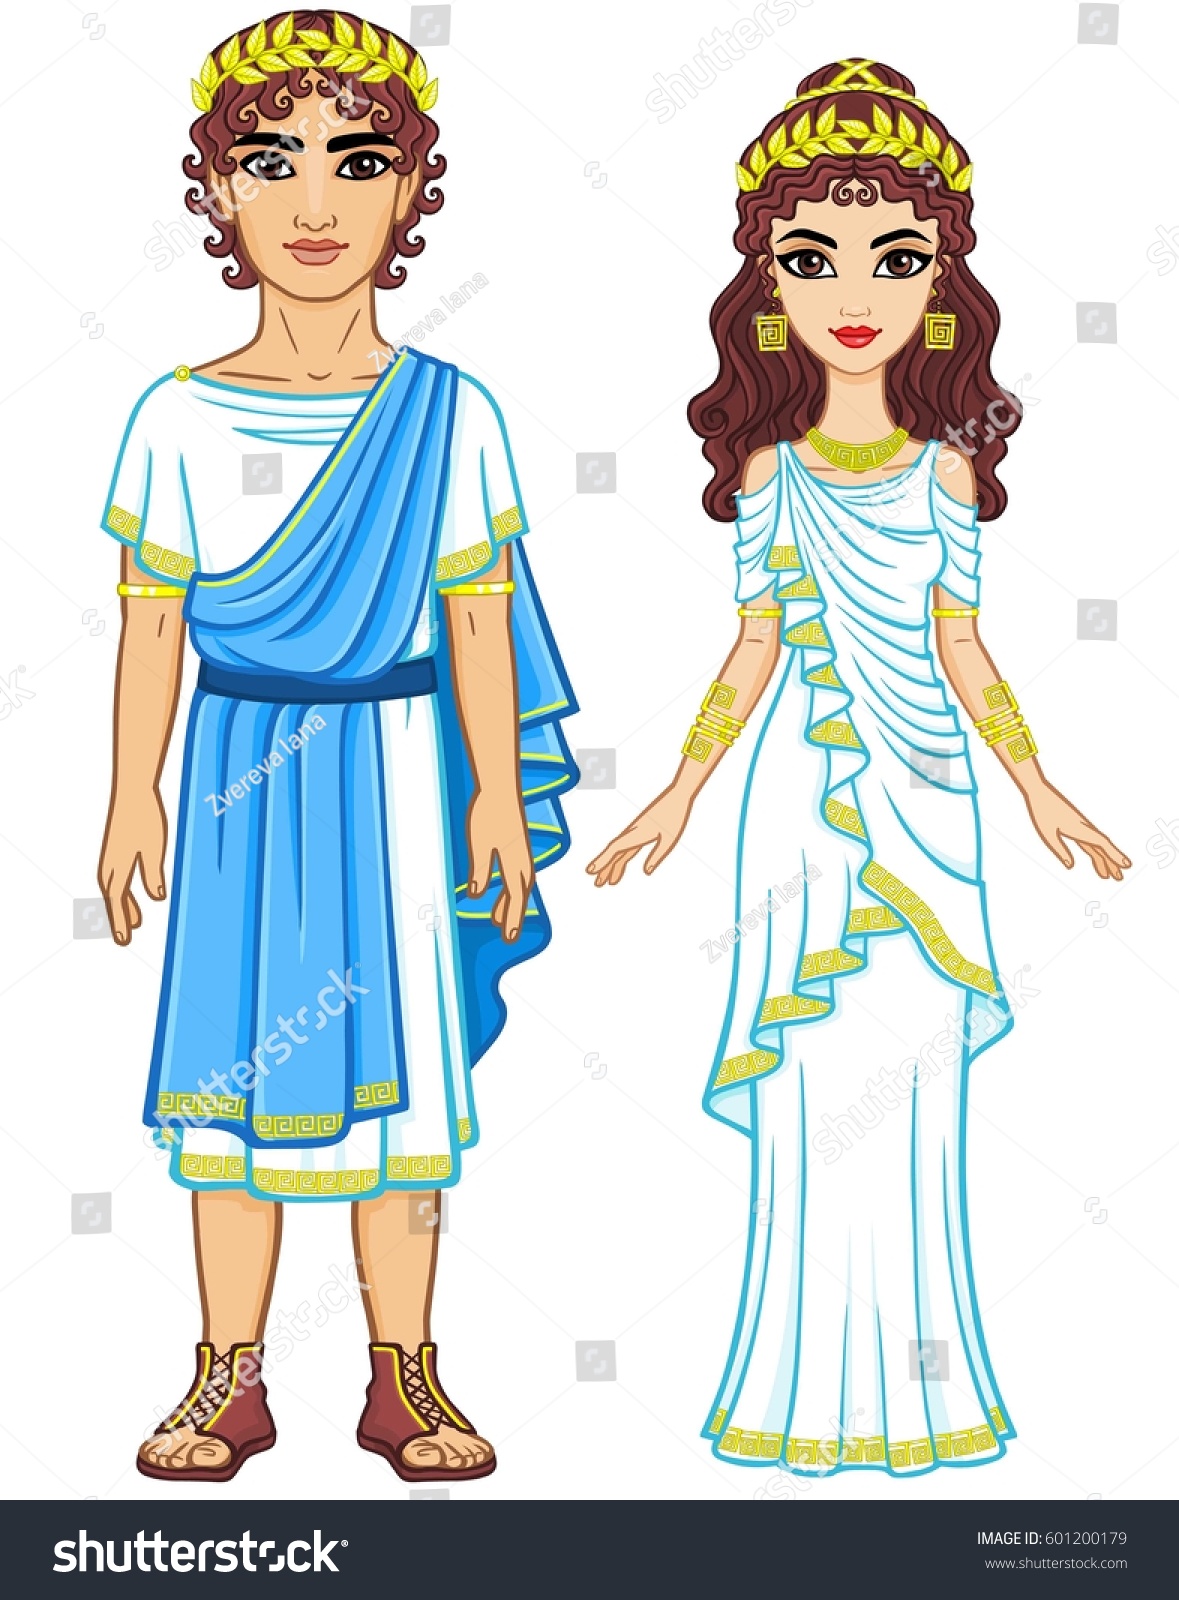 Одежда детей в древней Греции